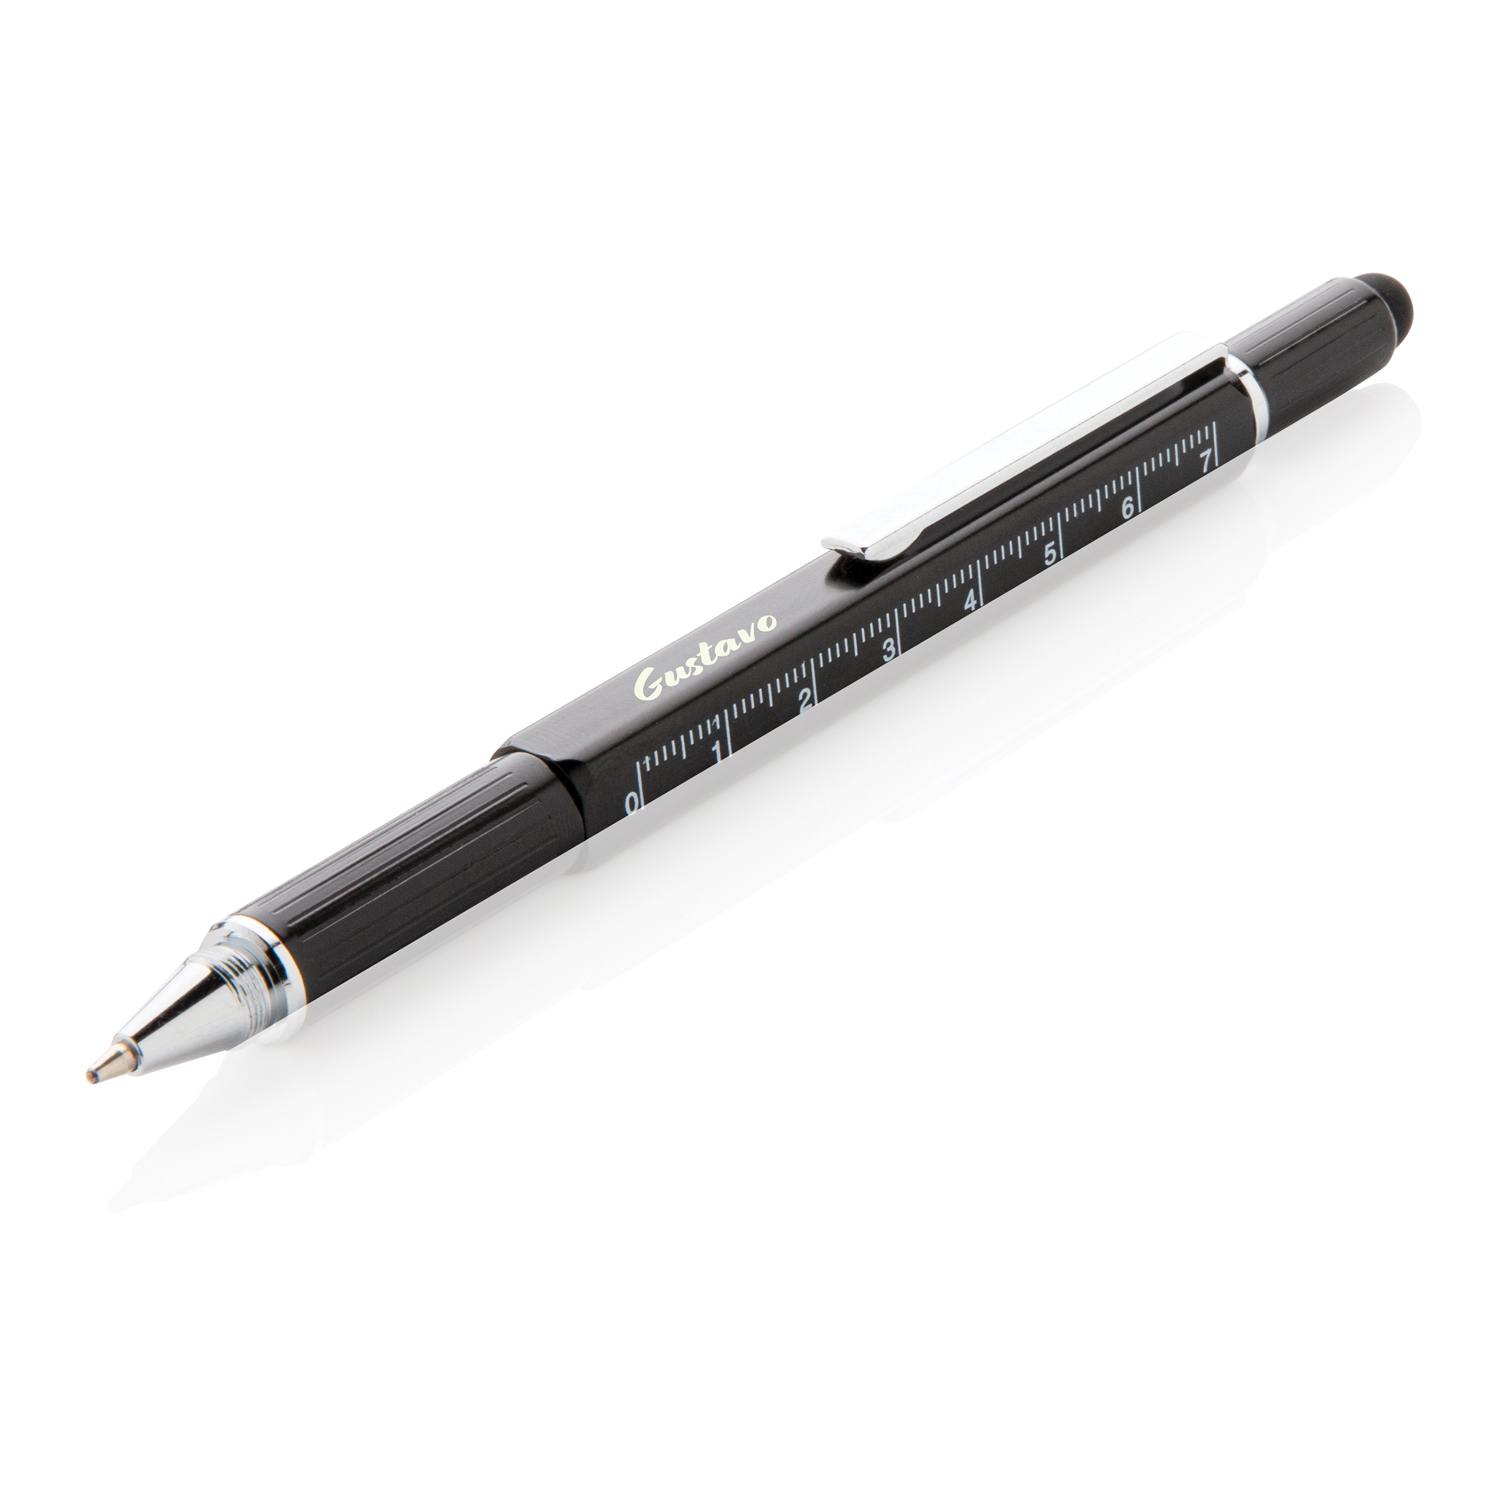 Многофункциональная ручка 5 в 1, черный, алюминий